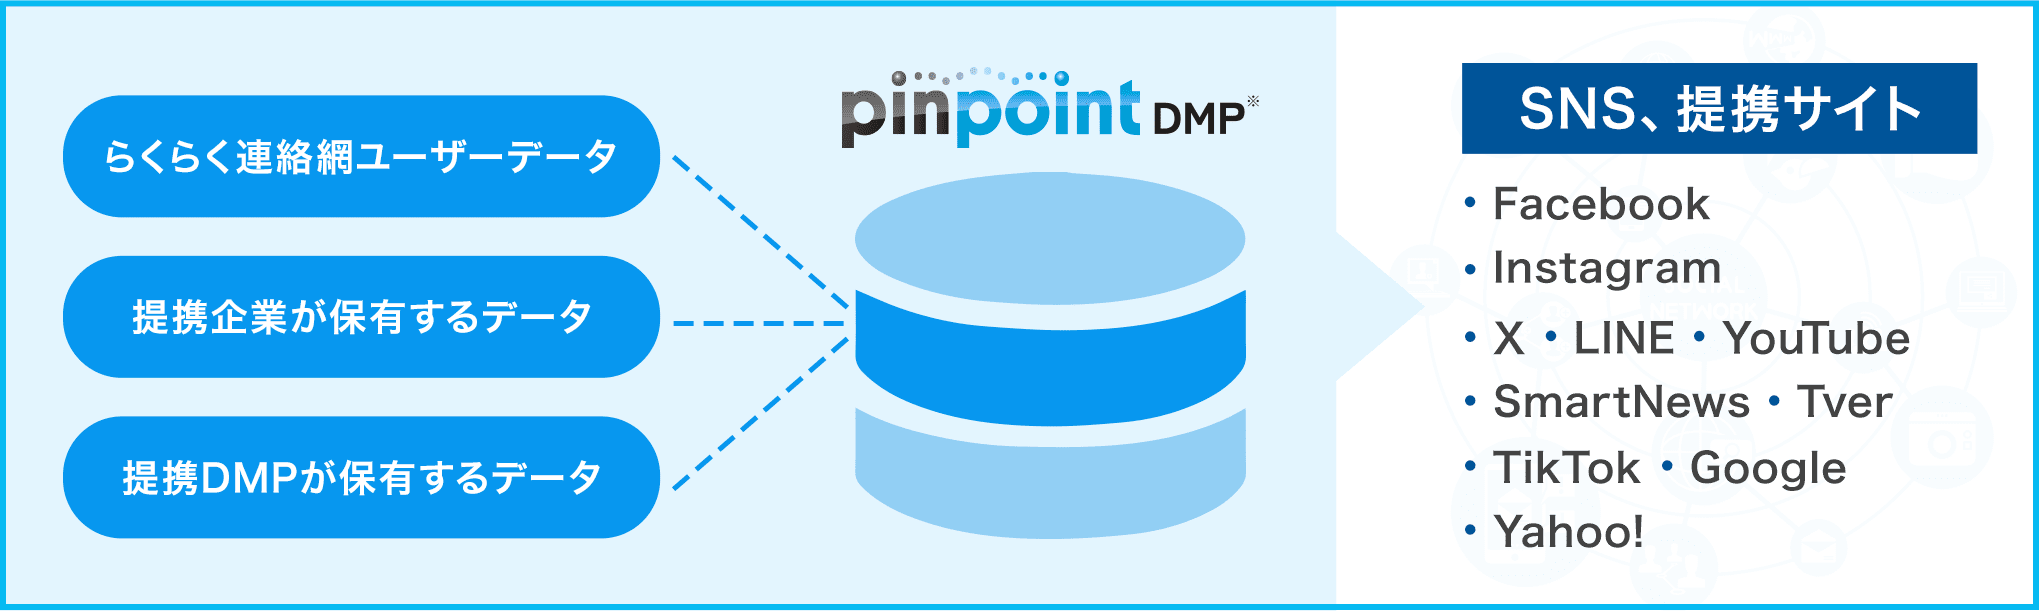 pinpointDMPイメージ図